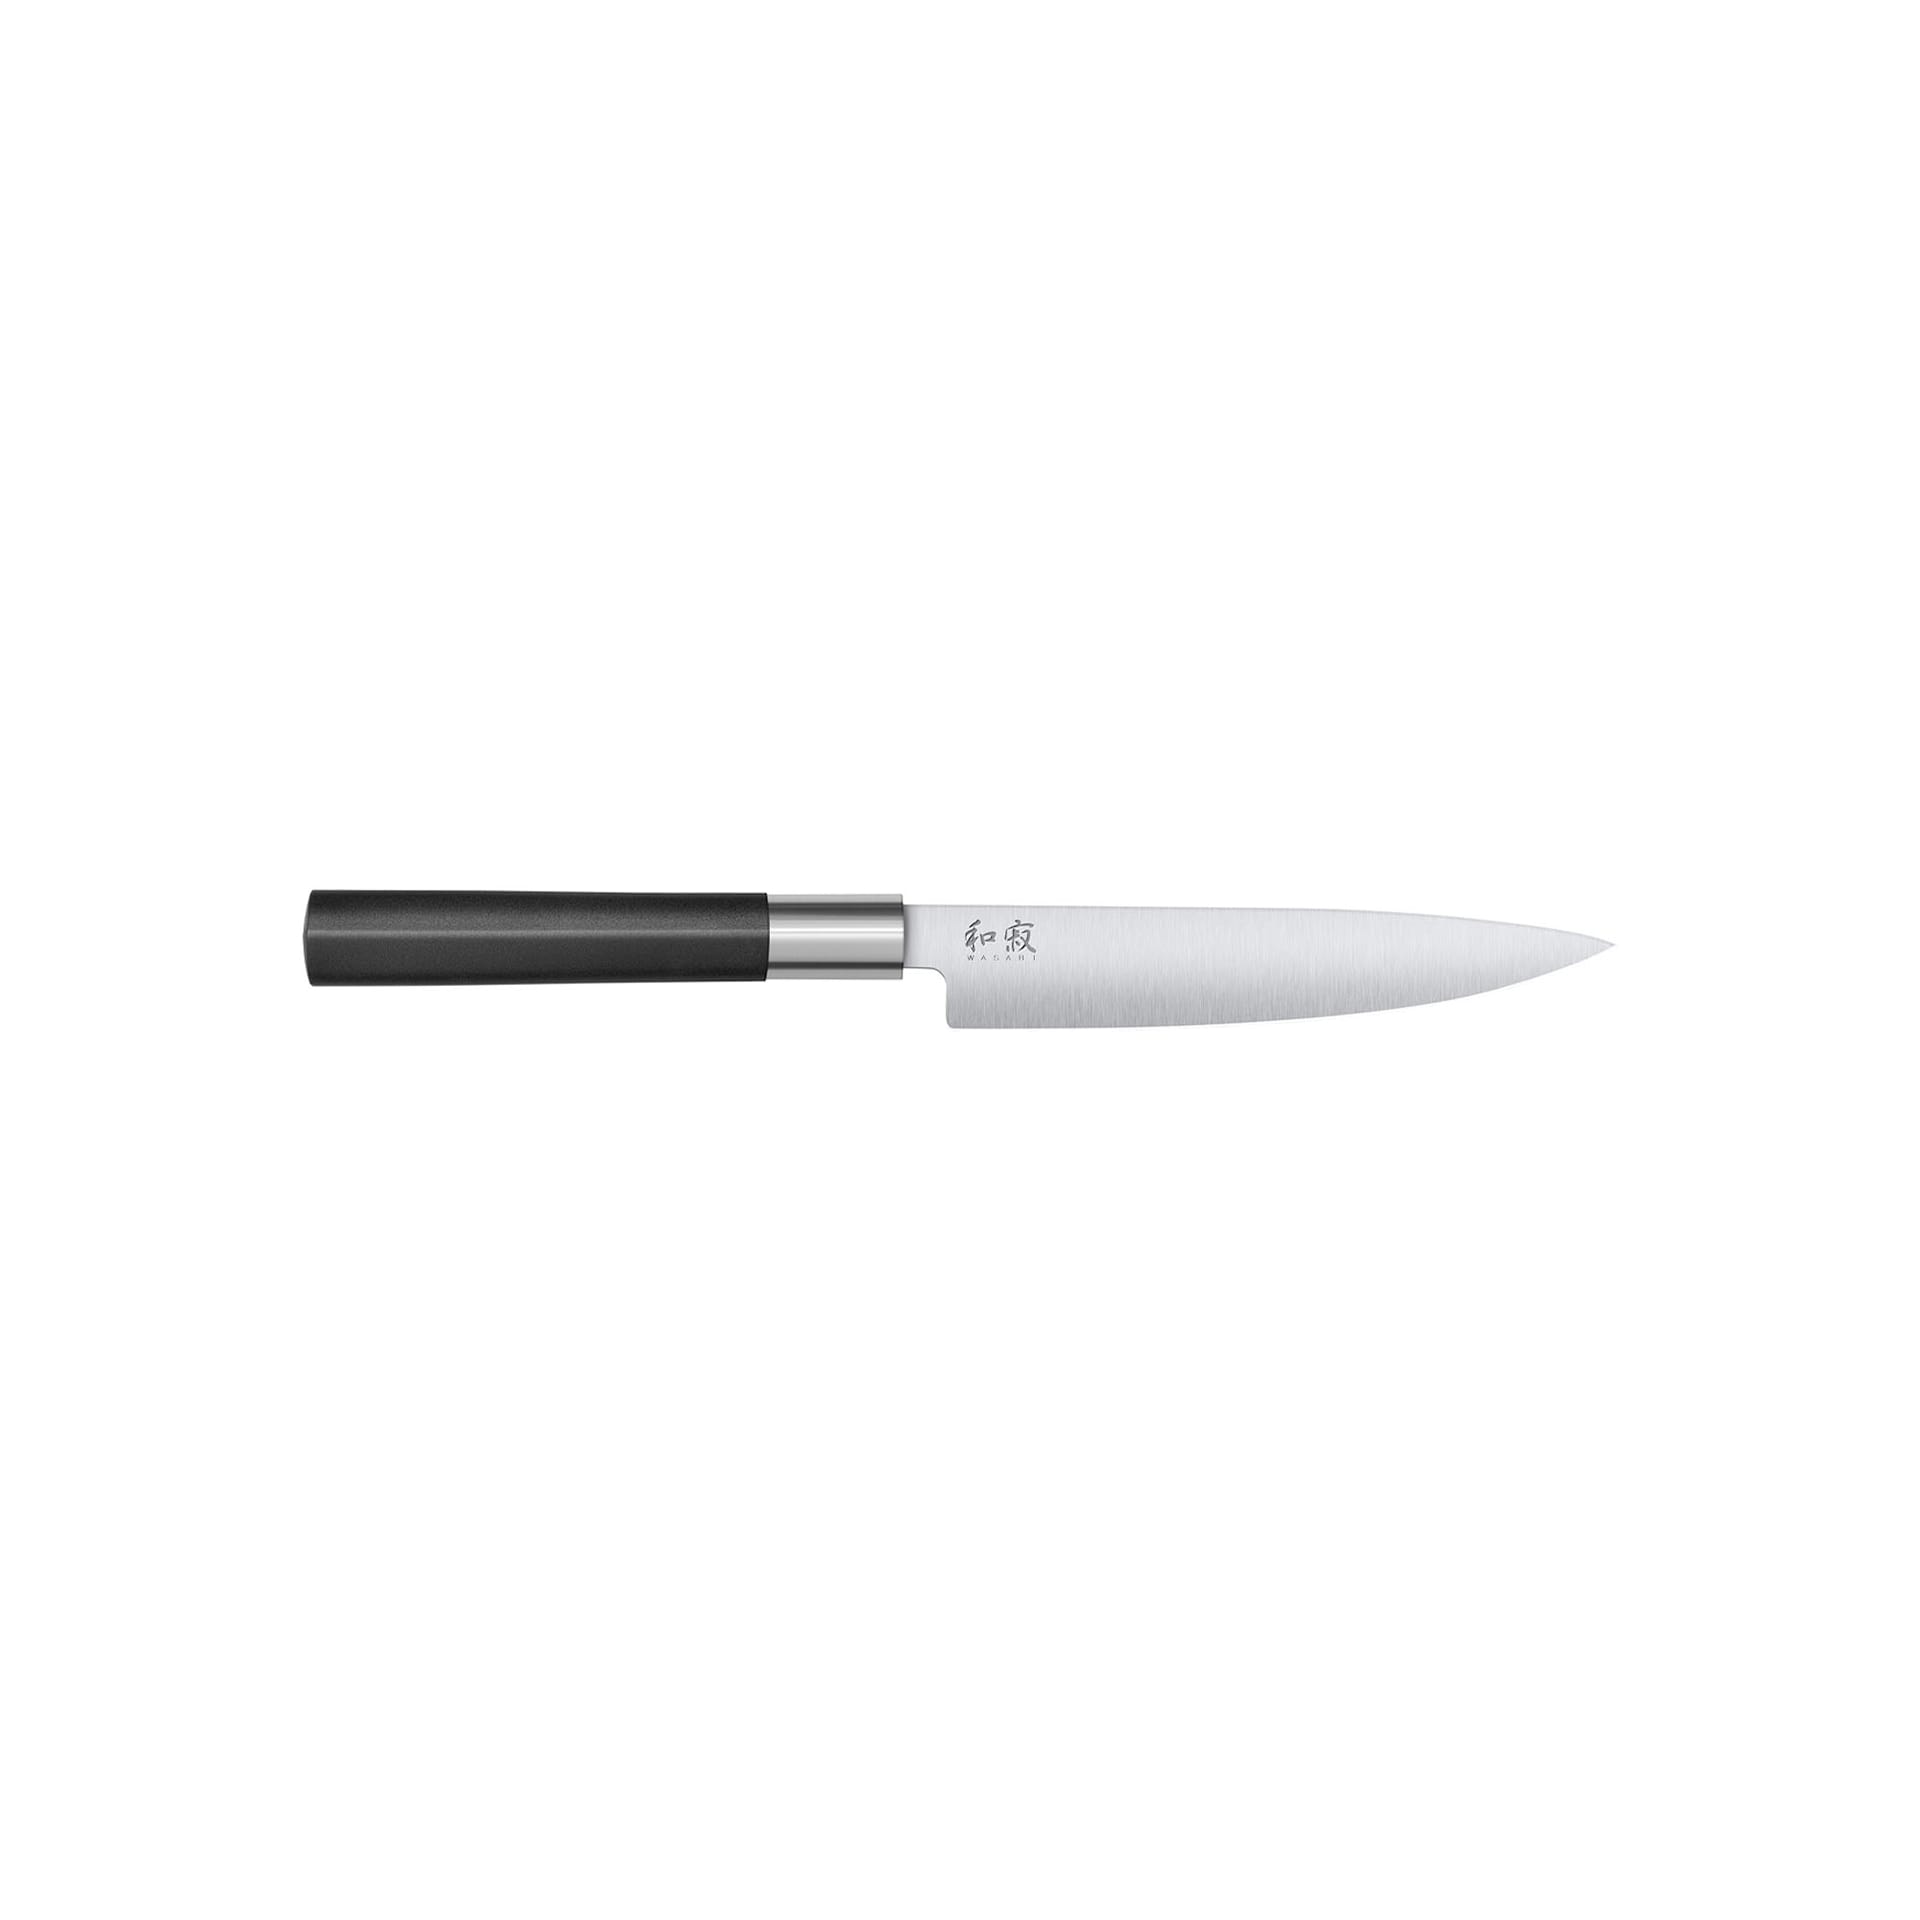 KAI WASABI Utility knife 15 cm - KAI - NO GA